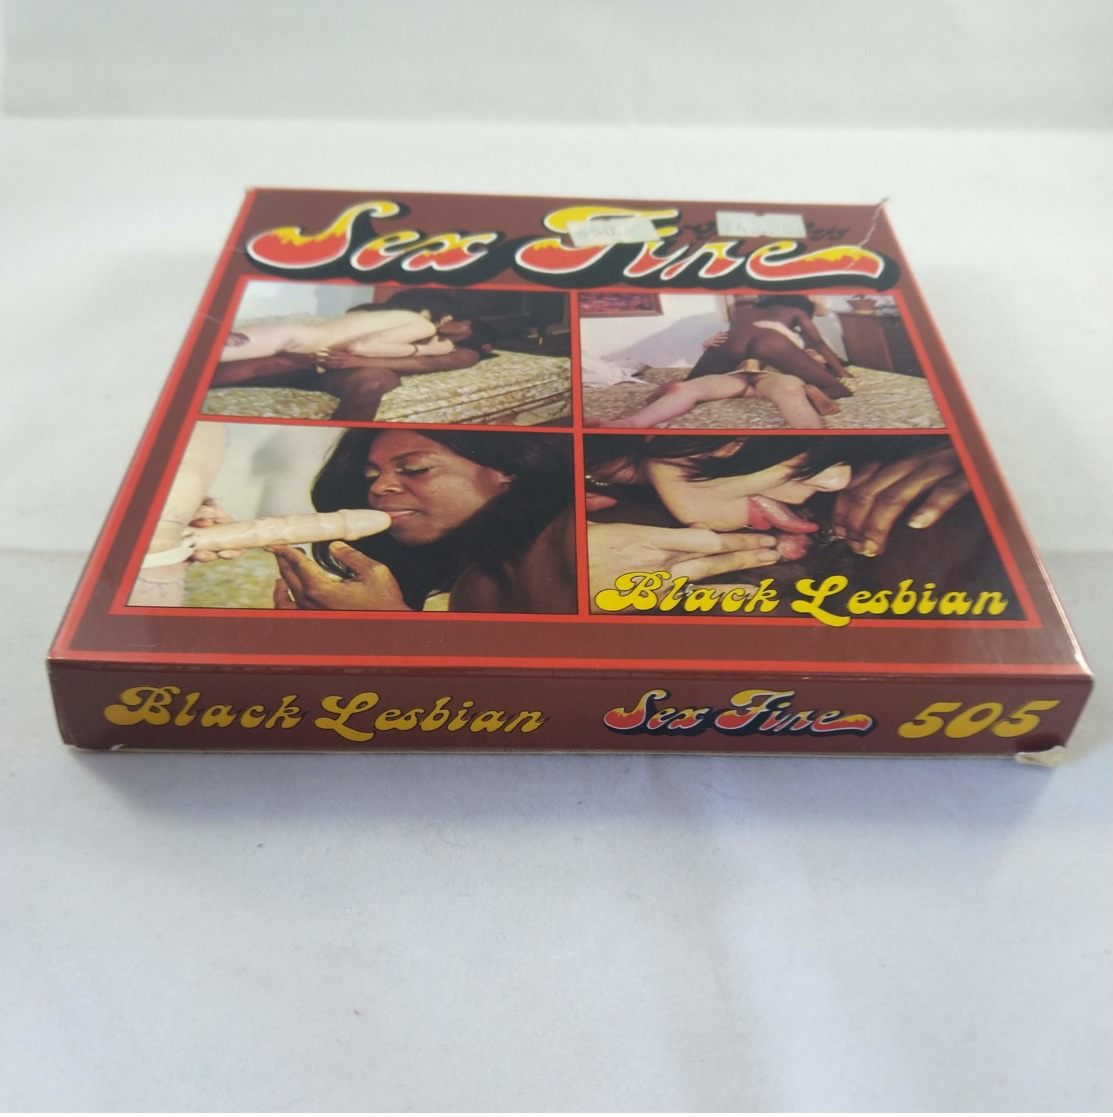 Vintage XXX Adult Super 8mm Movie - Black Lesbian Sex Fire 505 - Autres Formats